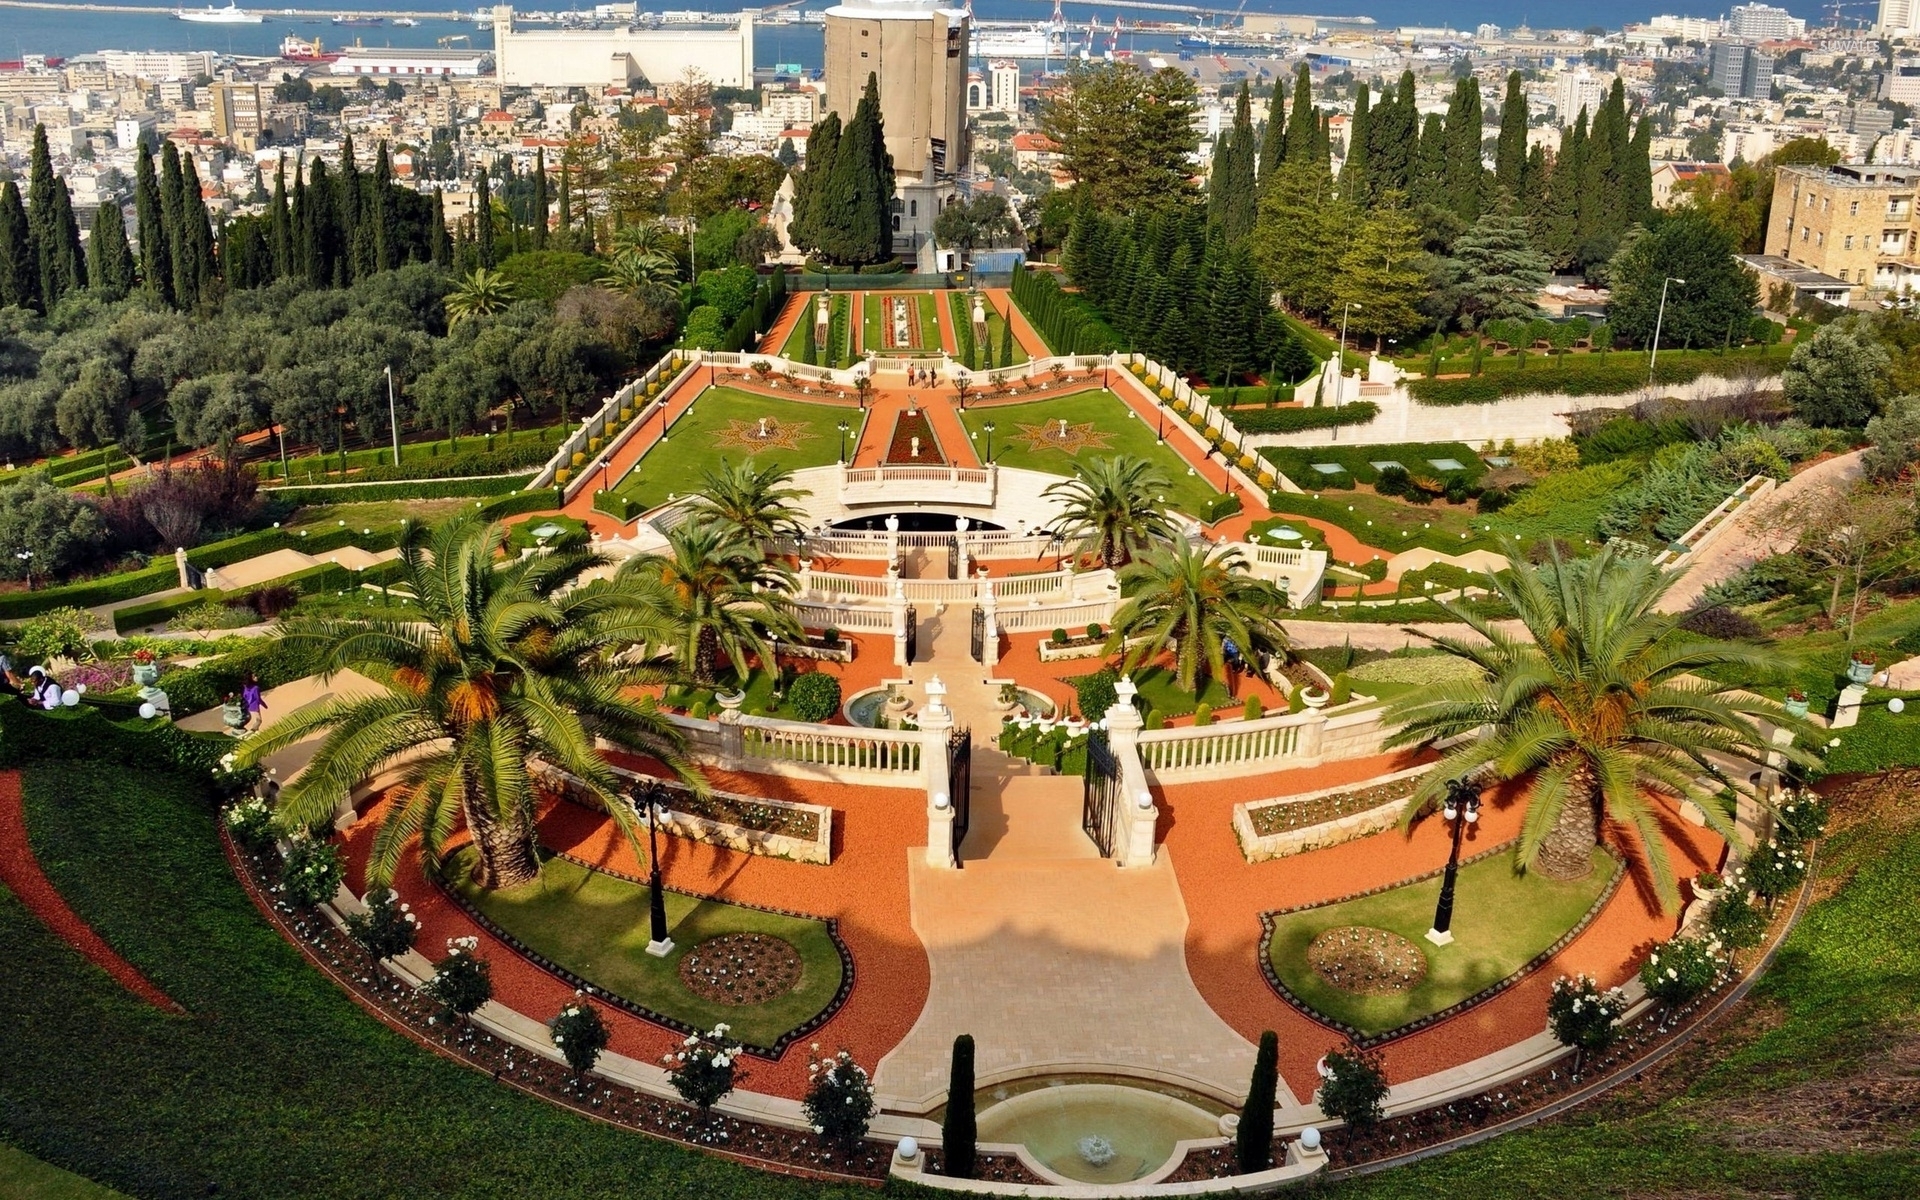 Baha'i Gardens Wallpaper Jpg - Bahá'í Gardens , HD Wallpaper & Backgrounds